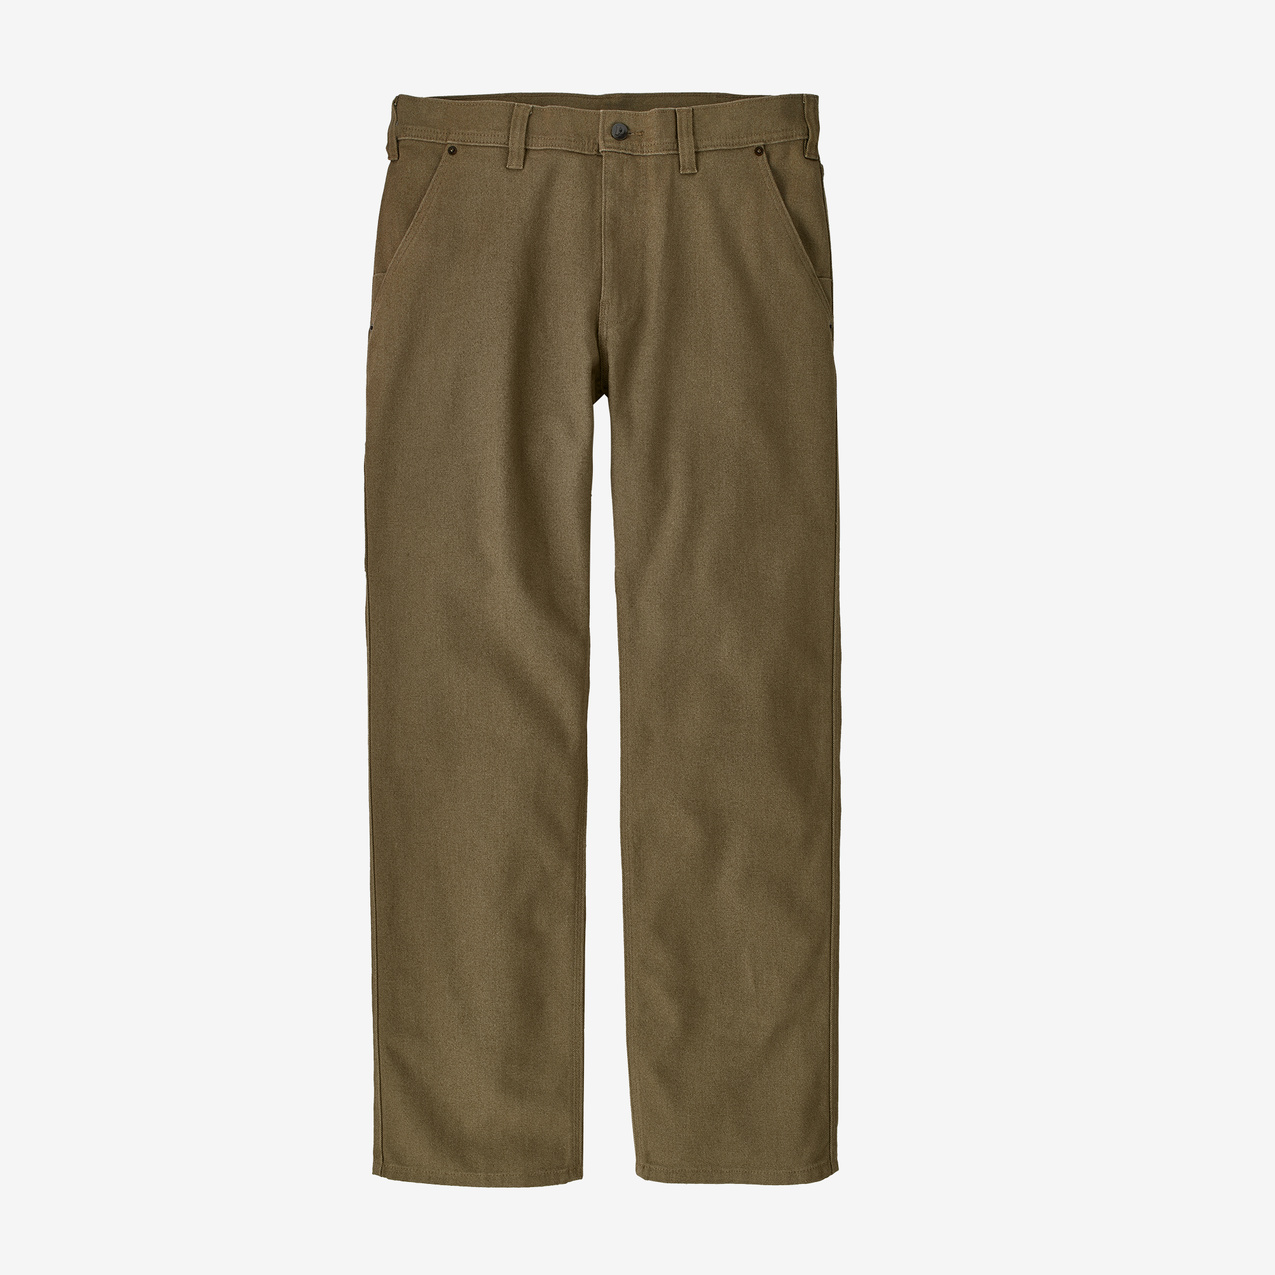 Patagonia Men's Iron Forge Hemp® 5-Pocket Pants - Short